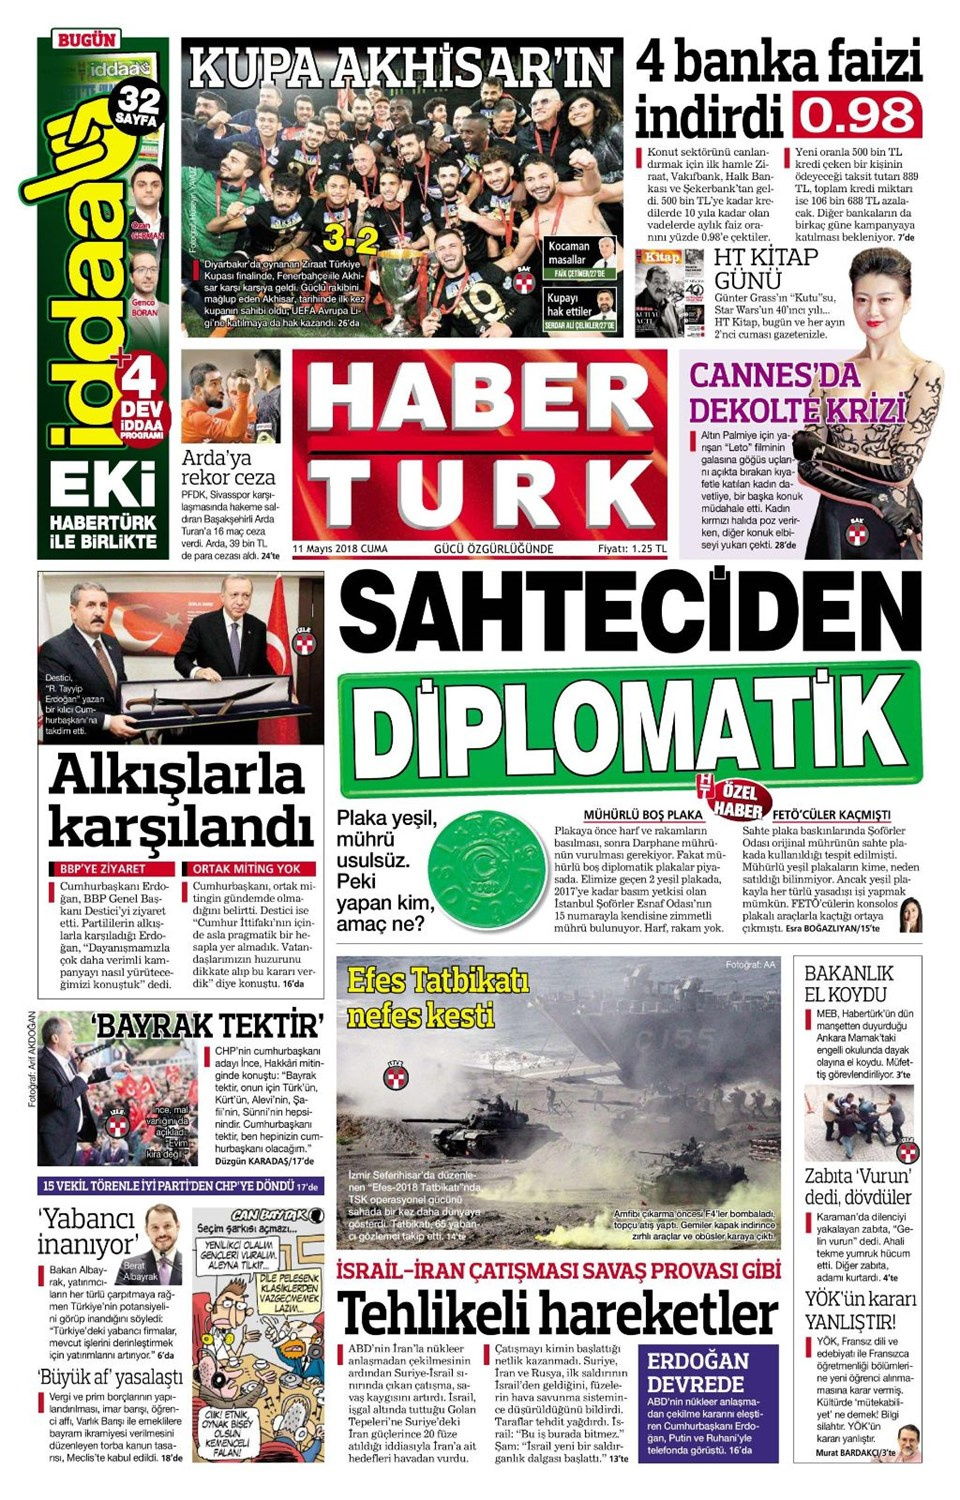 Gazete manşetleri 11 Mayıs 2018 Hürriyet - Sözcü - Habertürk